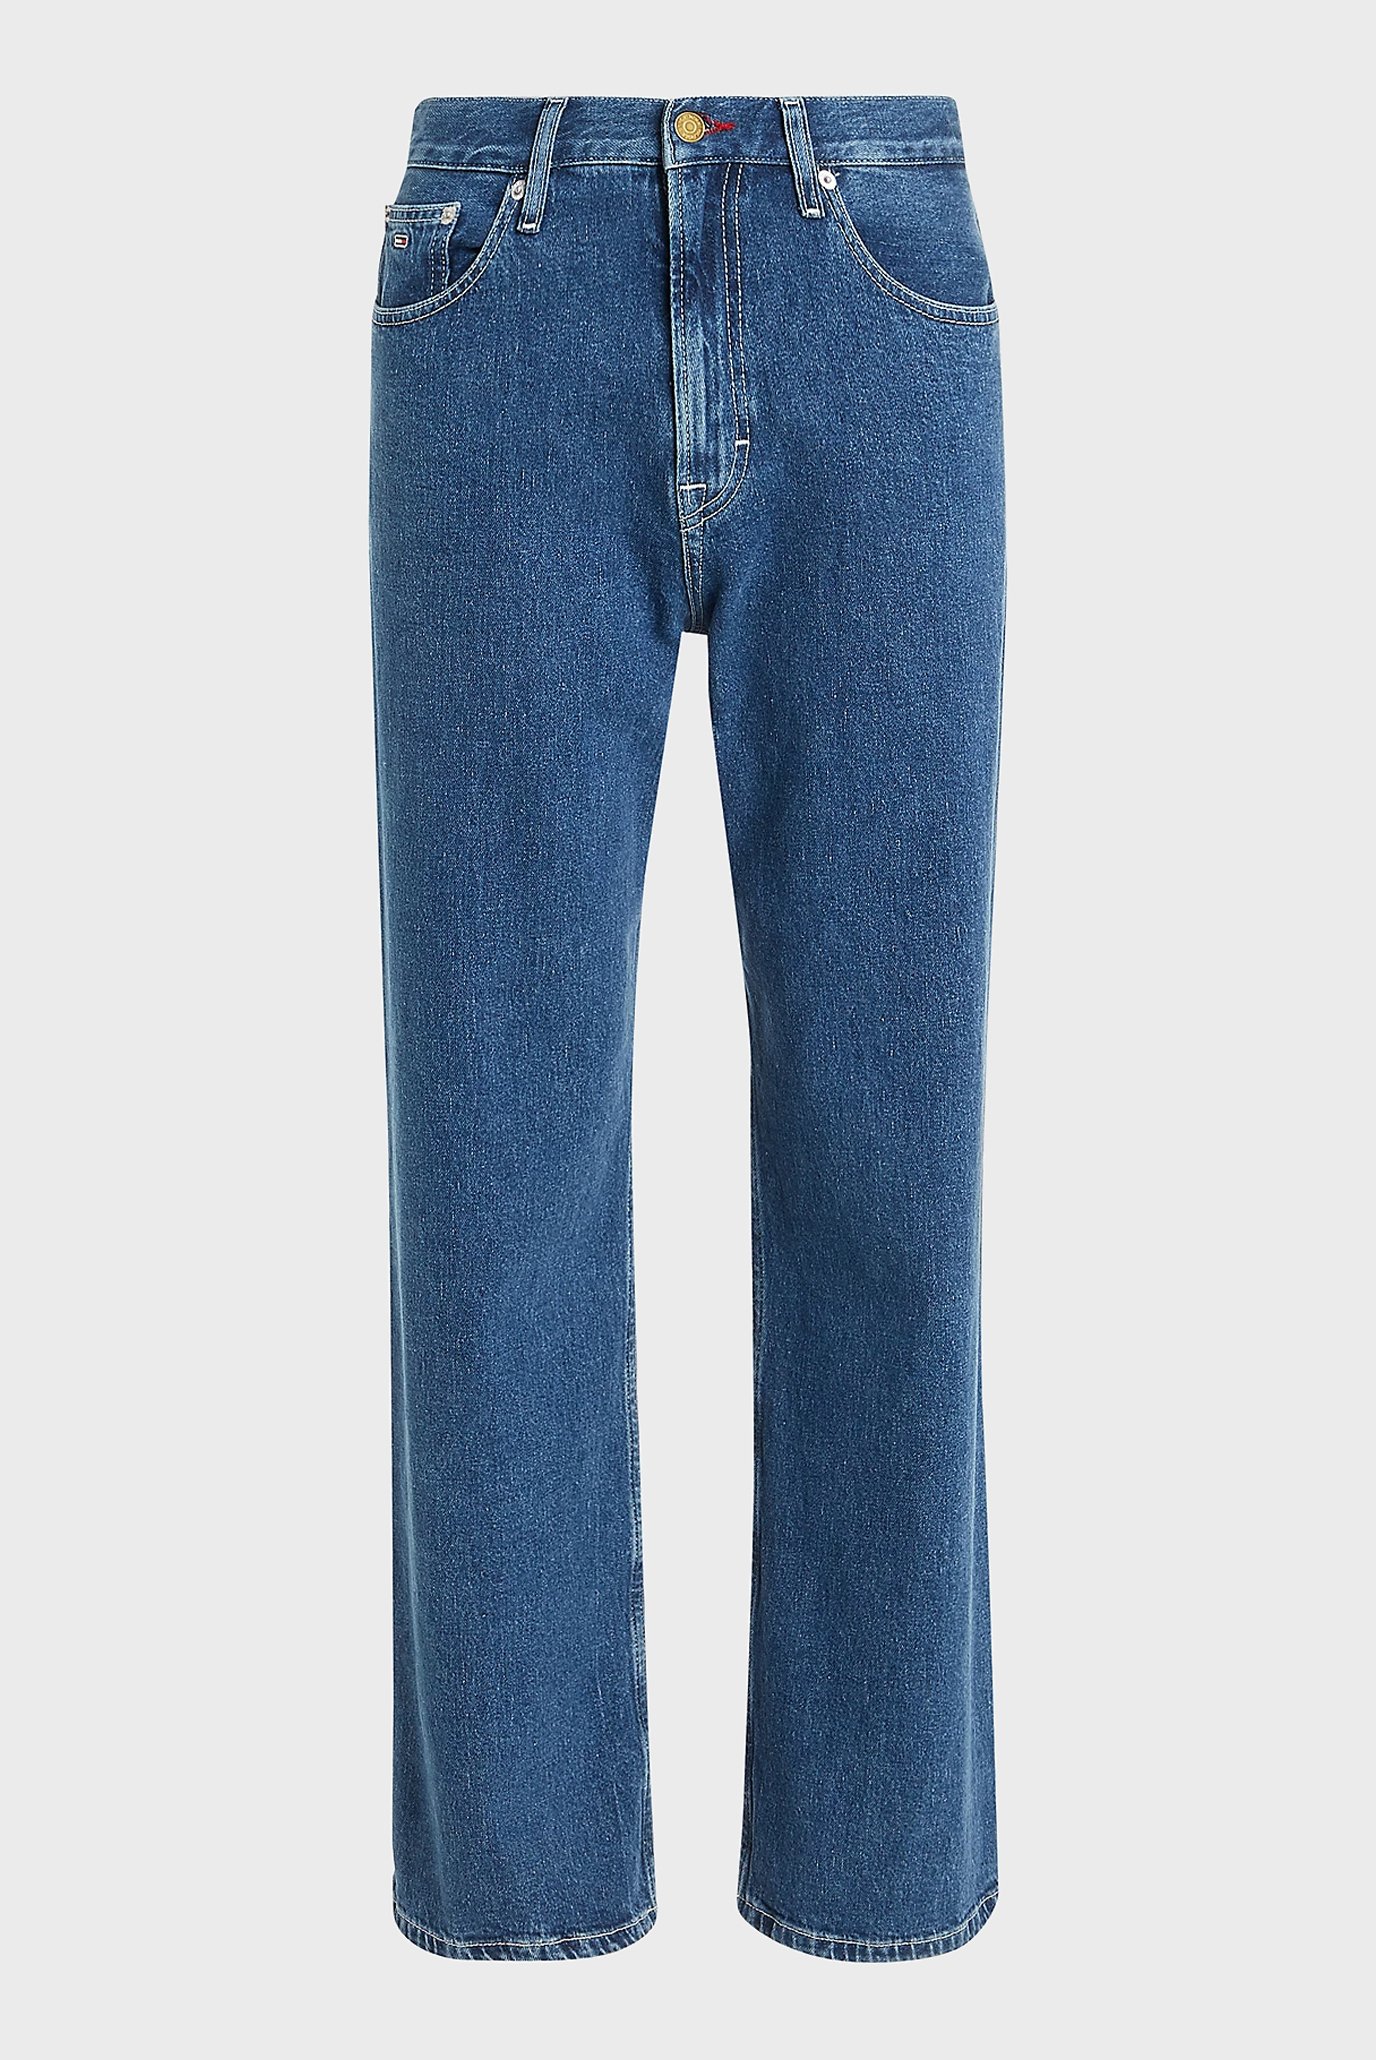 Мужские синие джинсы SKATER CARPENTER 1